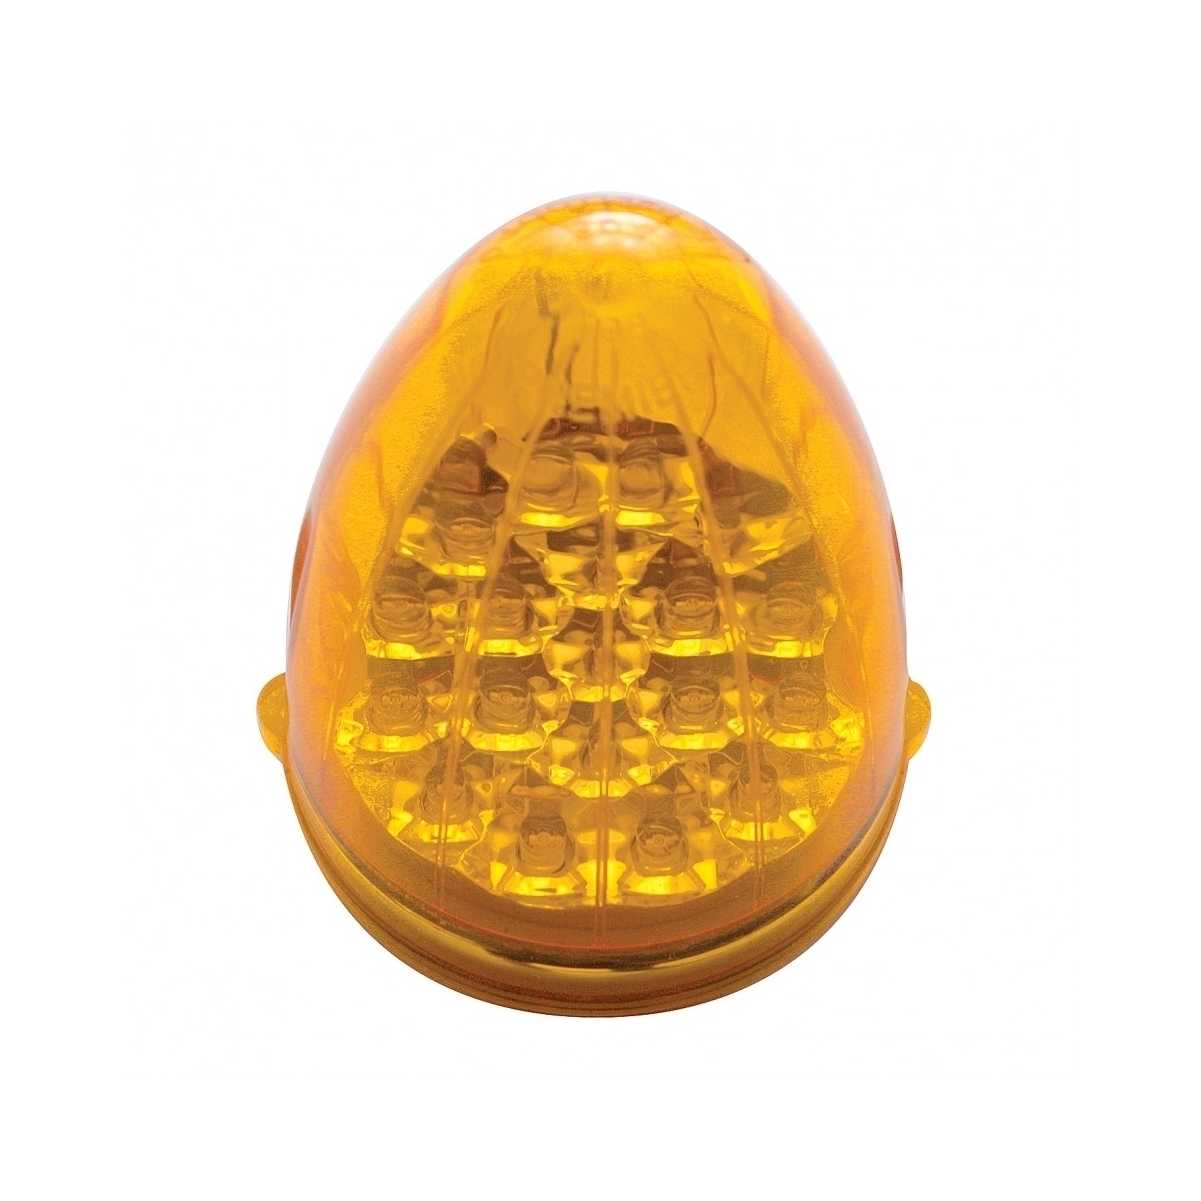 Peterbilt Front Air Cleaner Bracket w/ Lights & Visors - Amber LED/Amber Lens